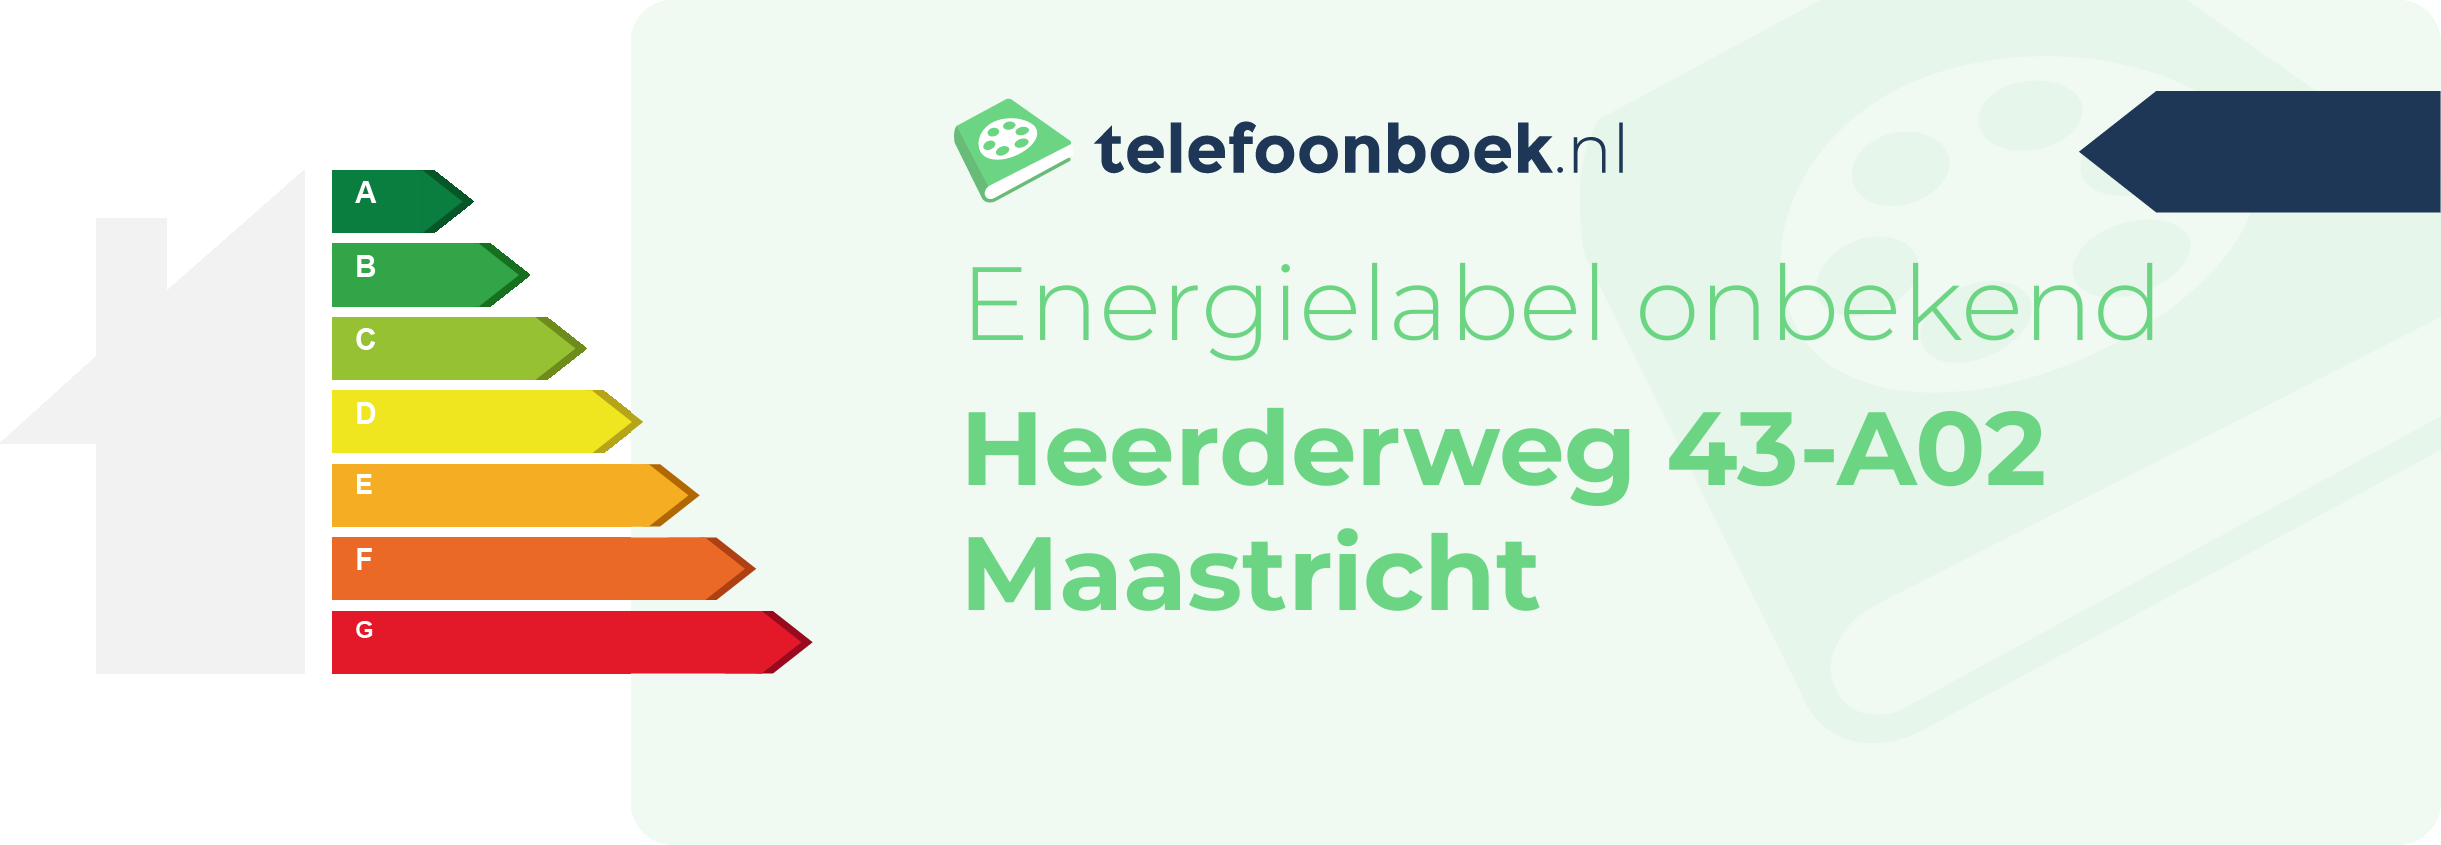 Energielabel Heerderweg 43-A02 Maastricht